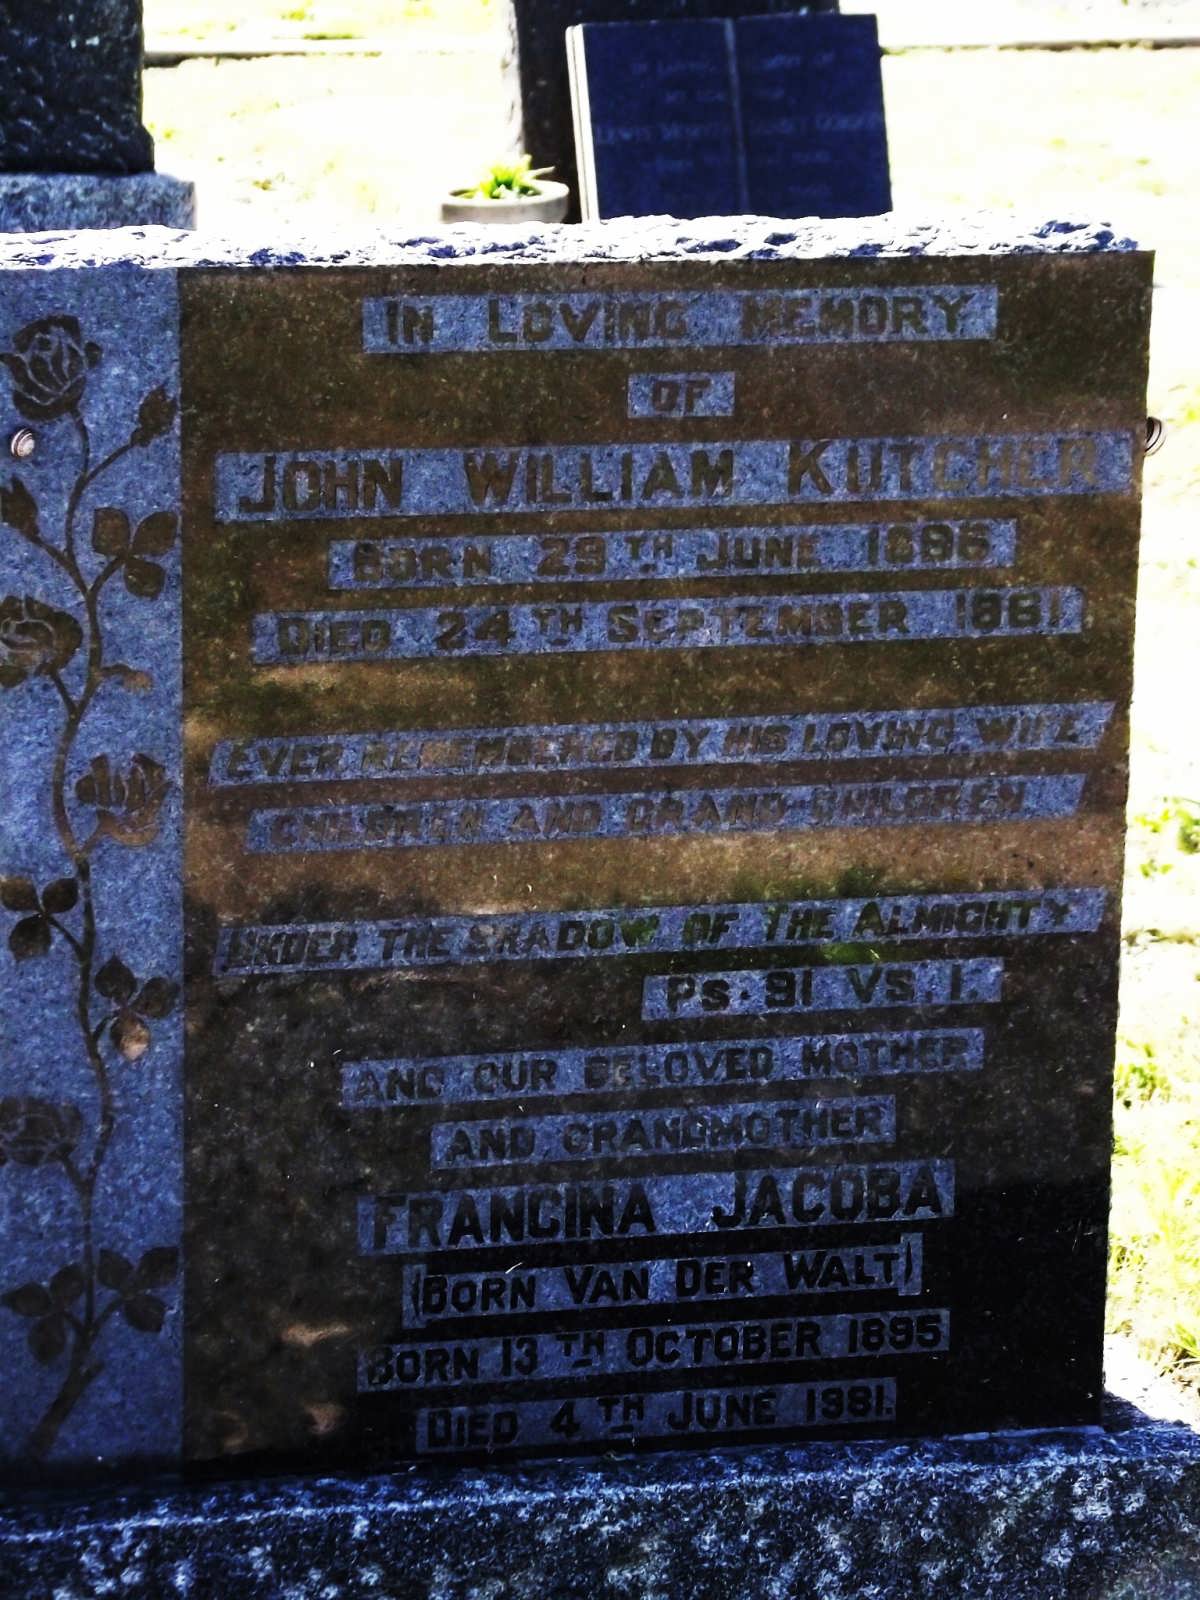 KUTCHER John William 1896-1981 & Francina Jacoba VAN DER WALT 1895-1981